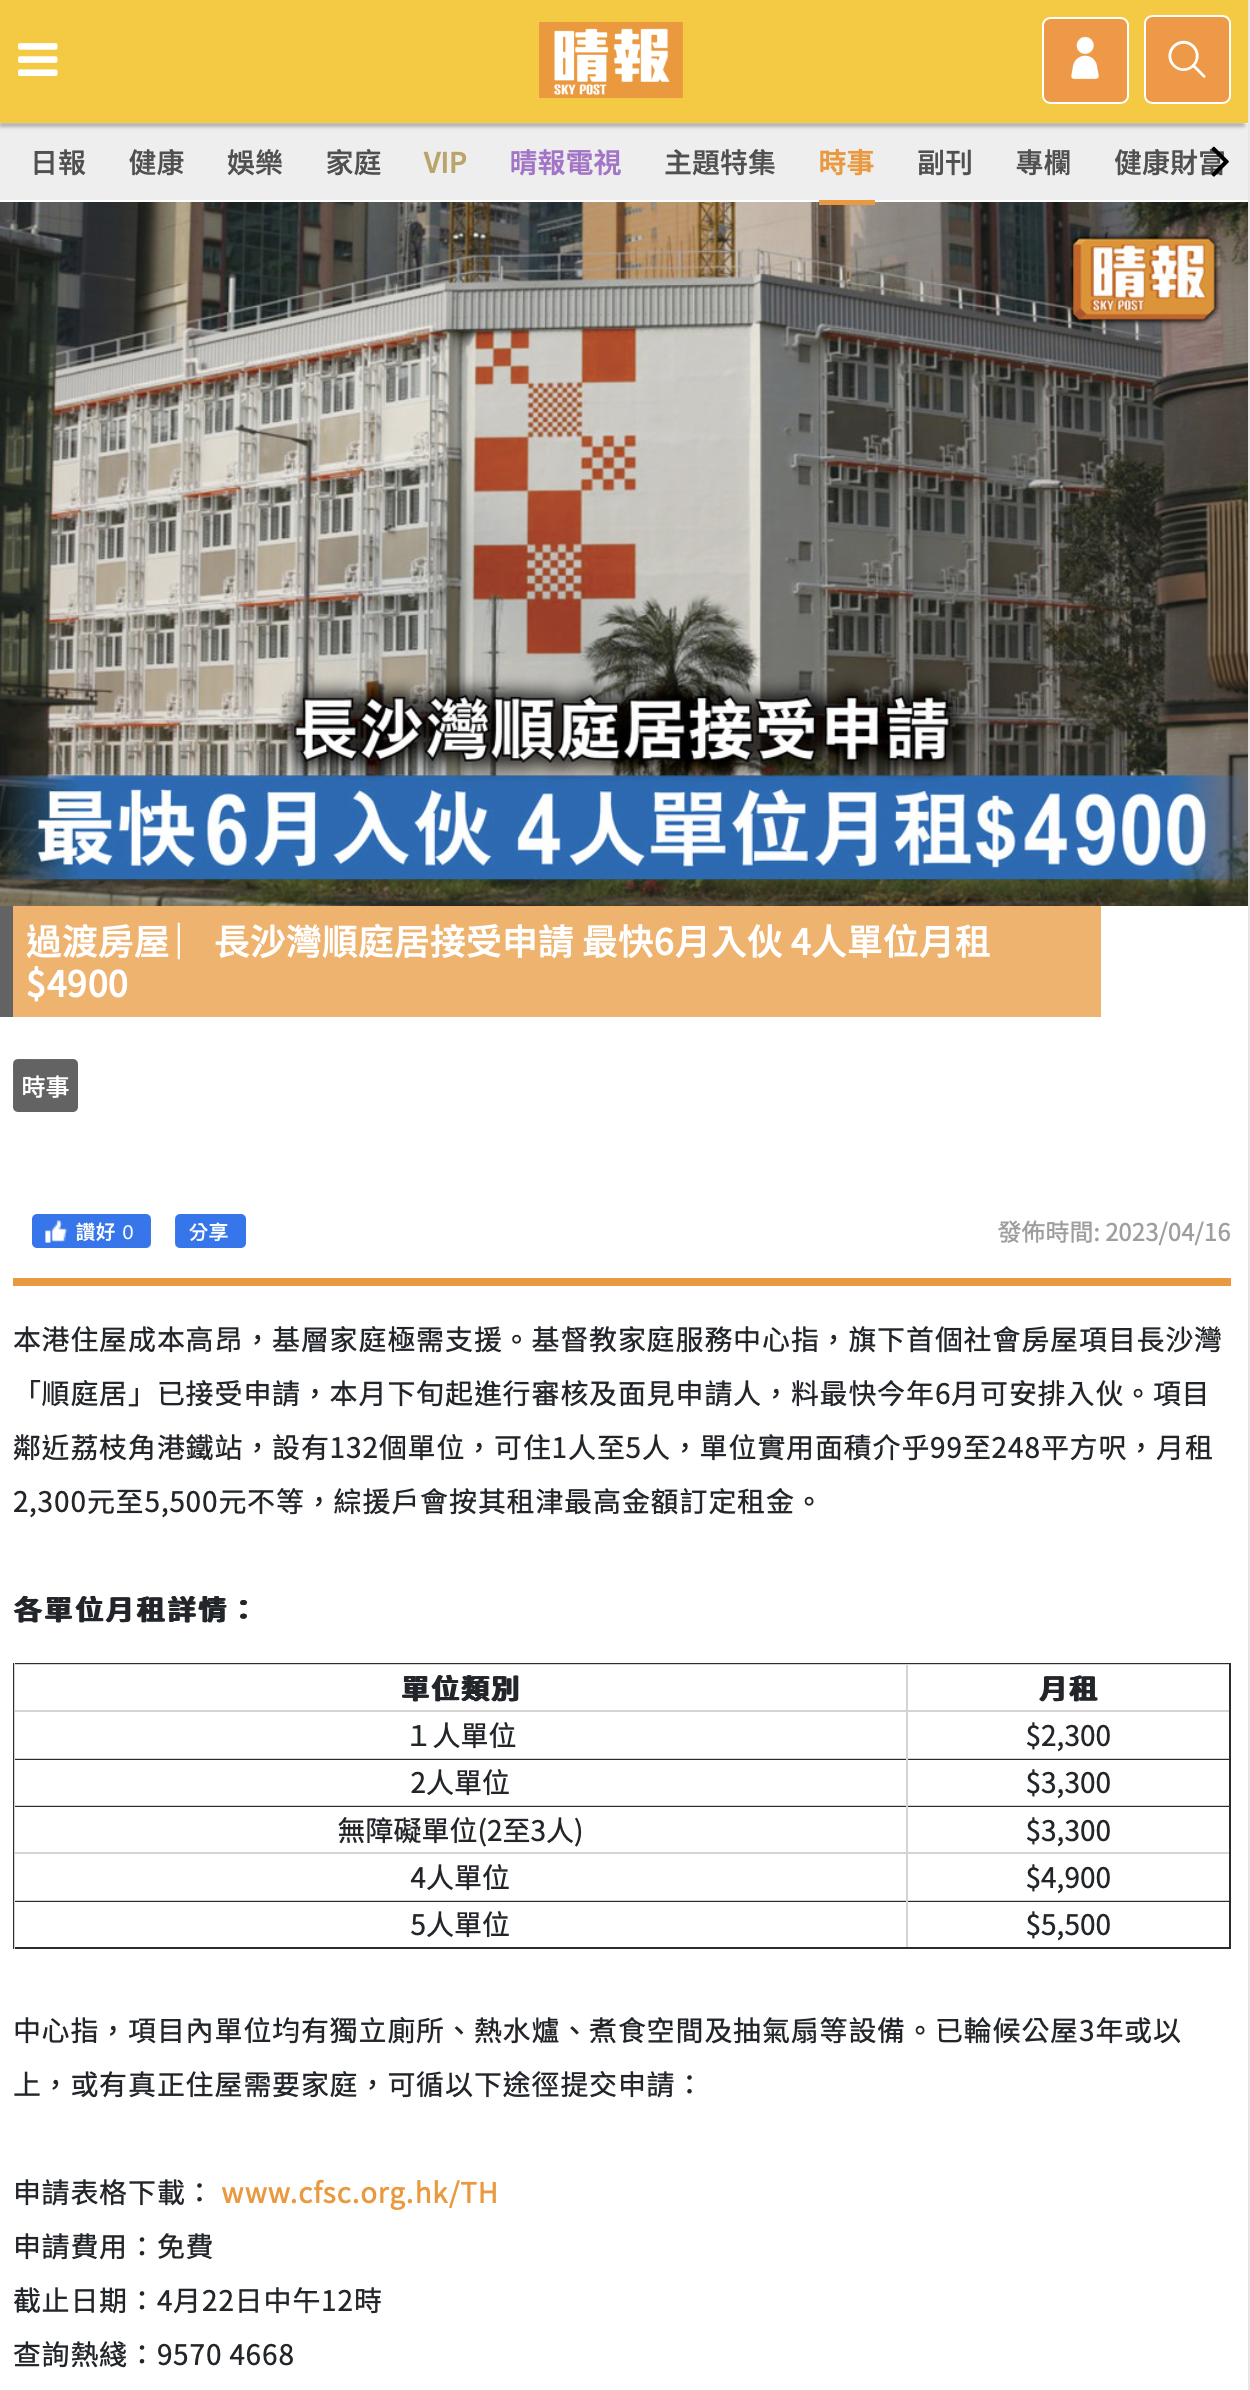 过渡房屋 ︳长沙湾顺庭居接受申请 最快6月入伙 4人单位月租$4900